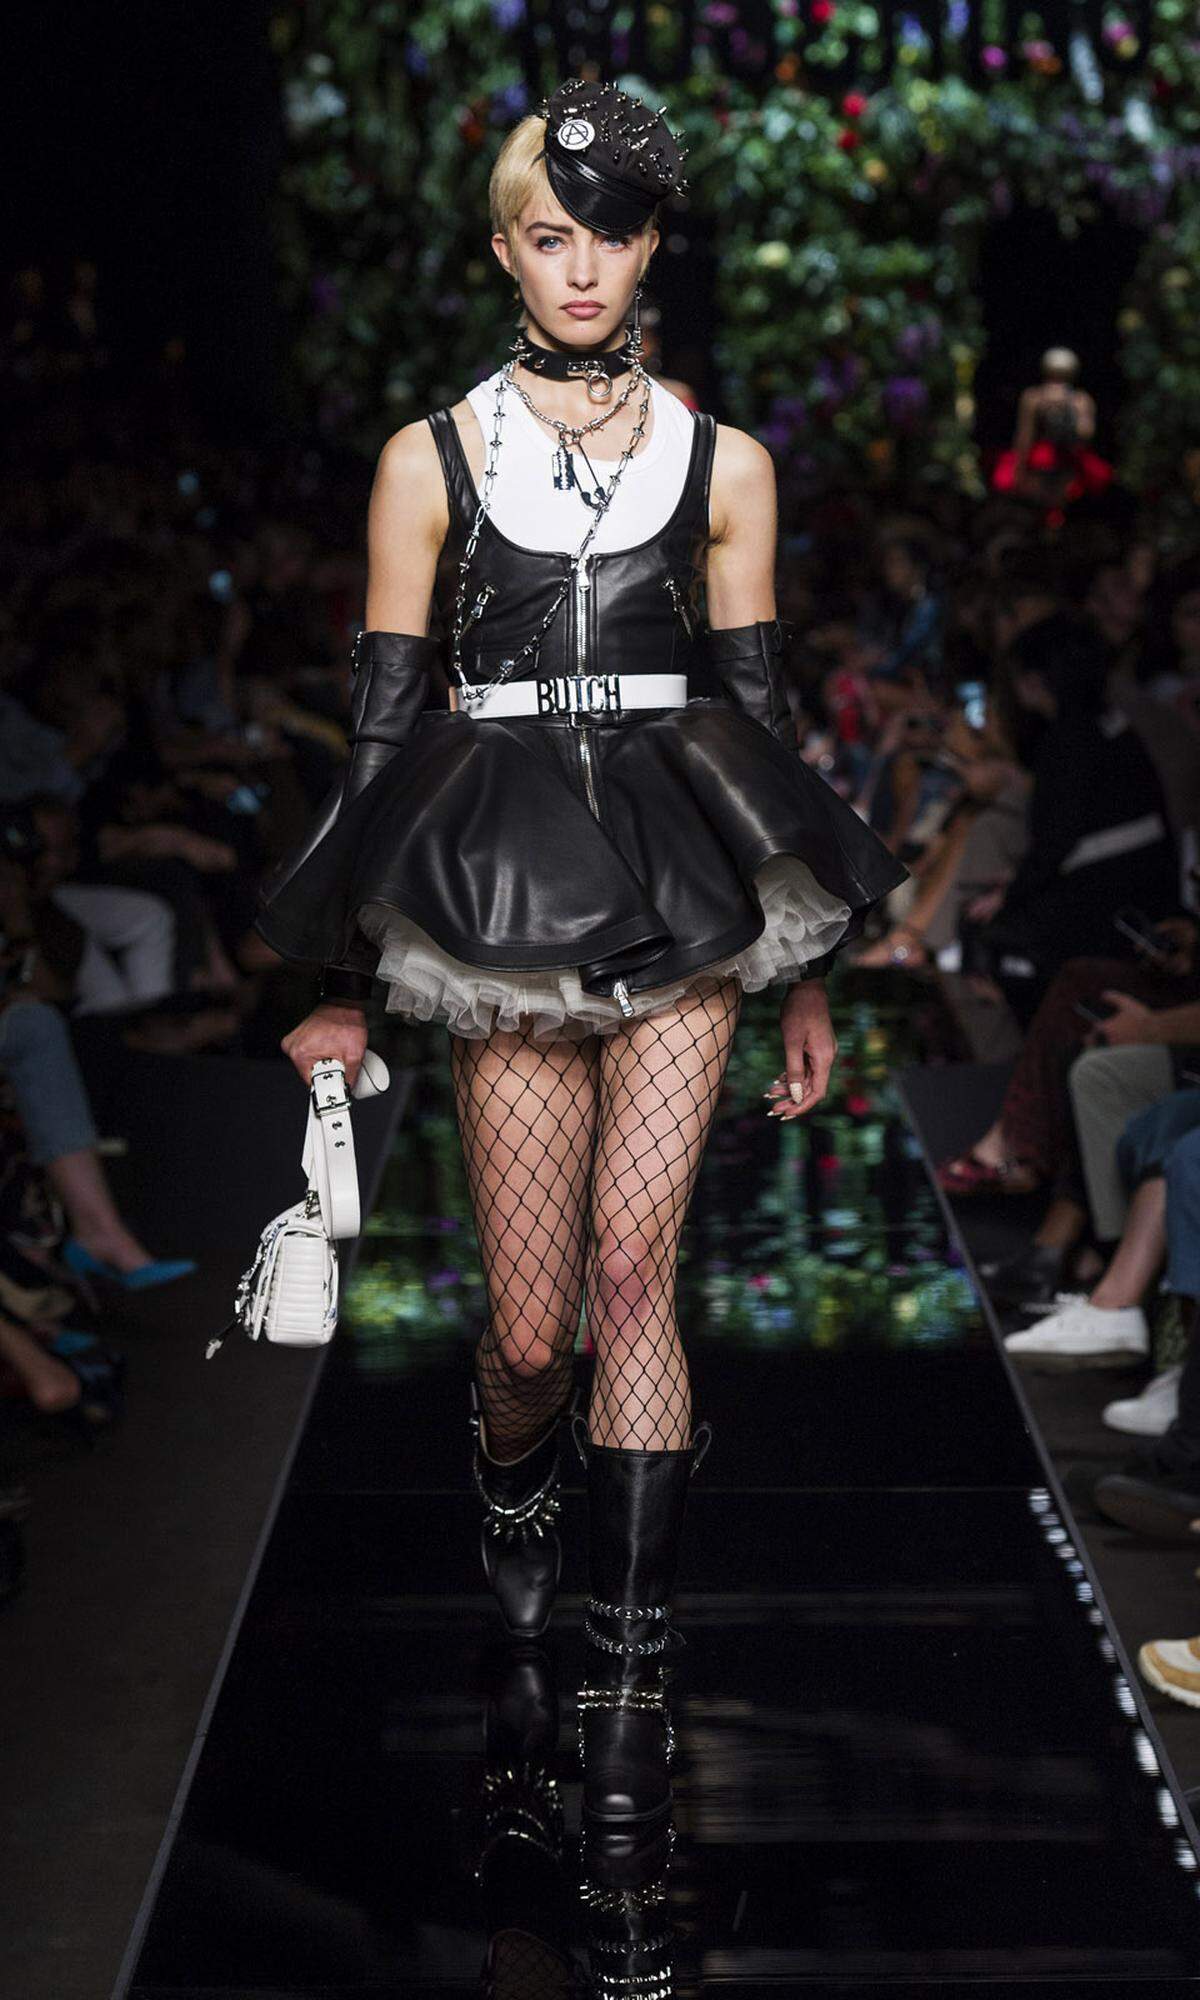 Jeremy Scott mag es rockig. Er kombiniert für Moschino ein ultrakurzes Lederkleid mit Petticoat darunter.